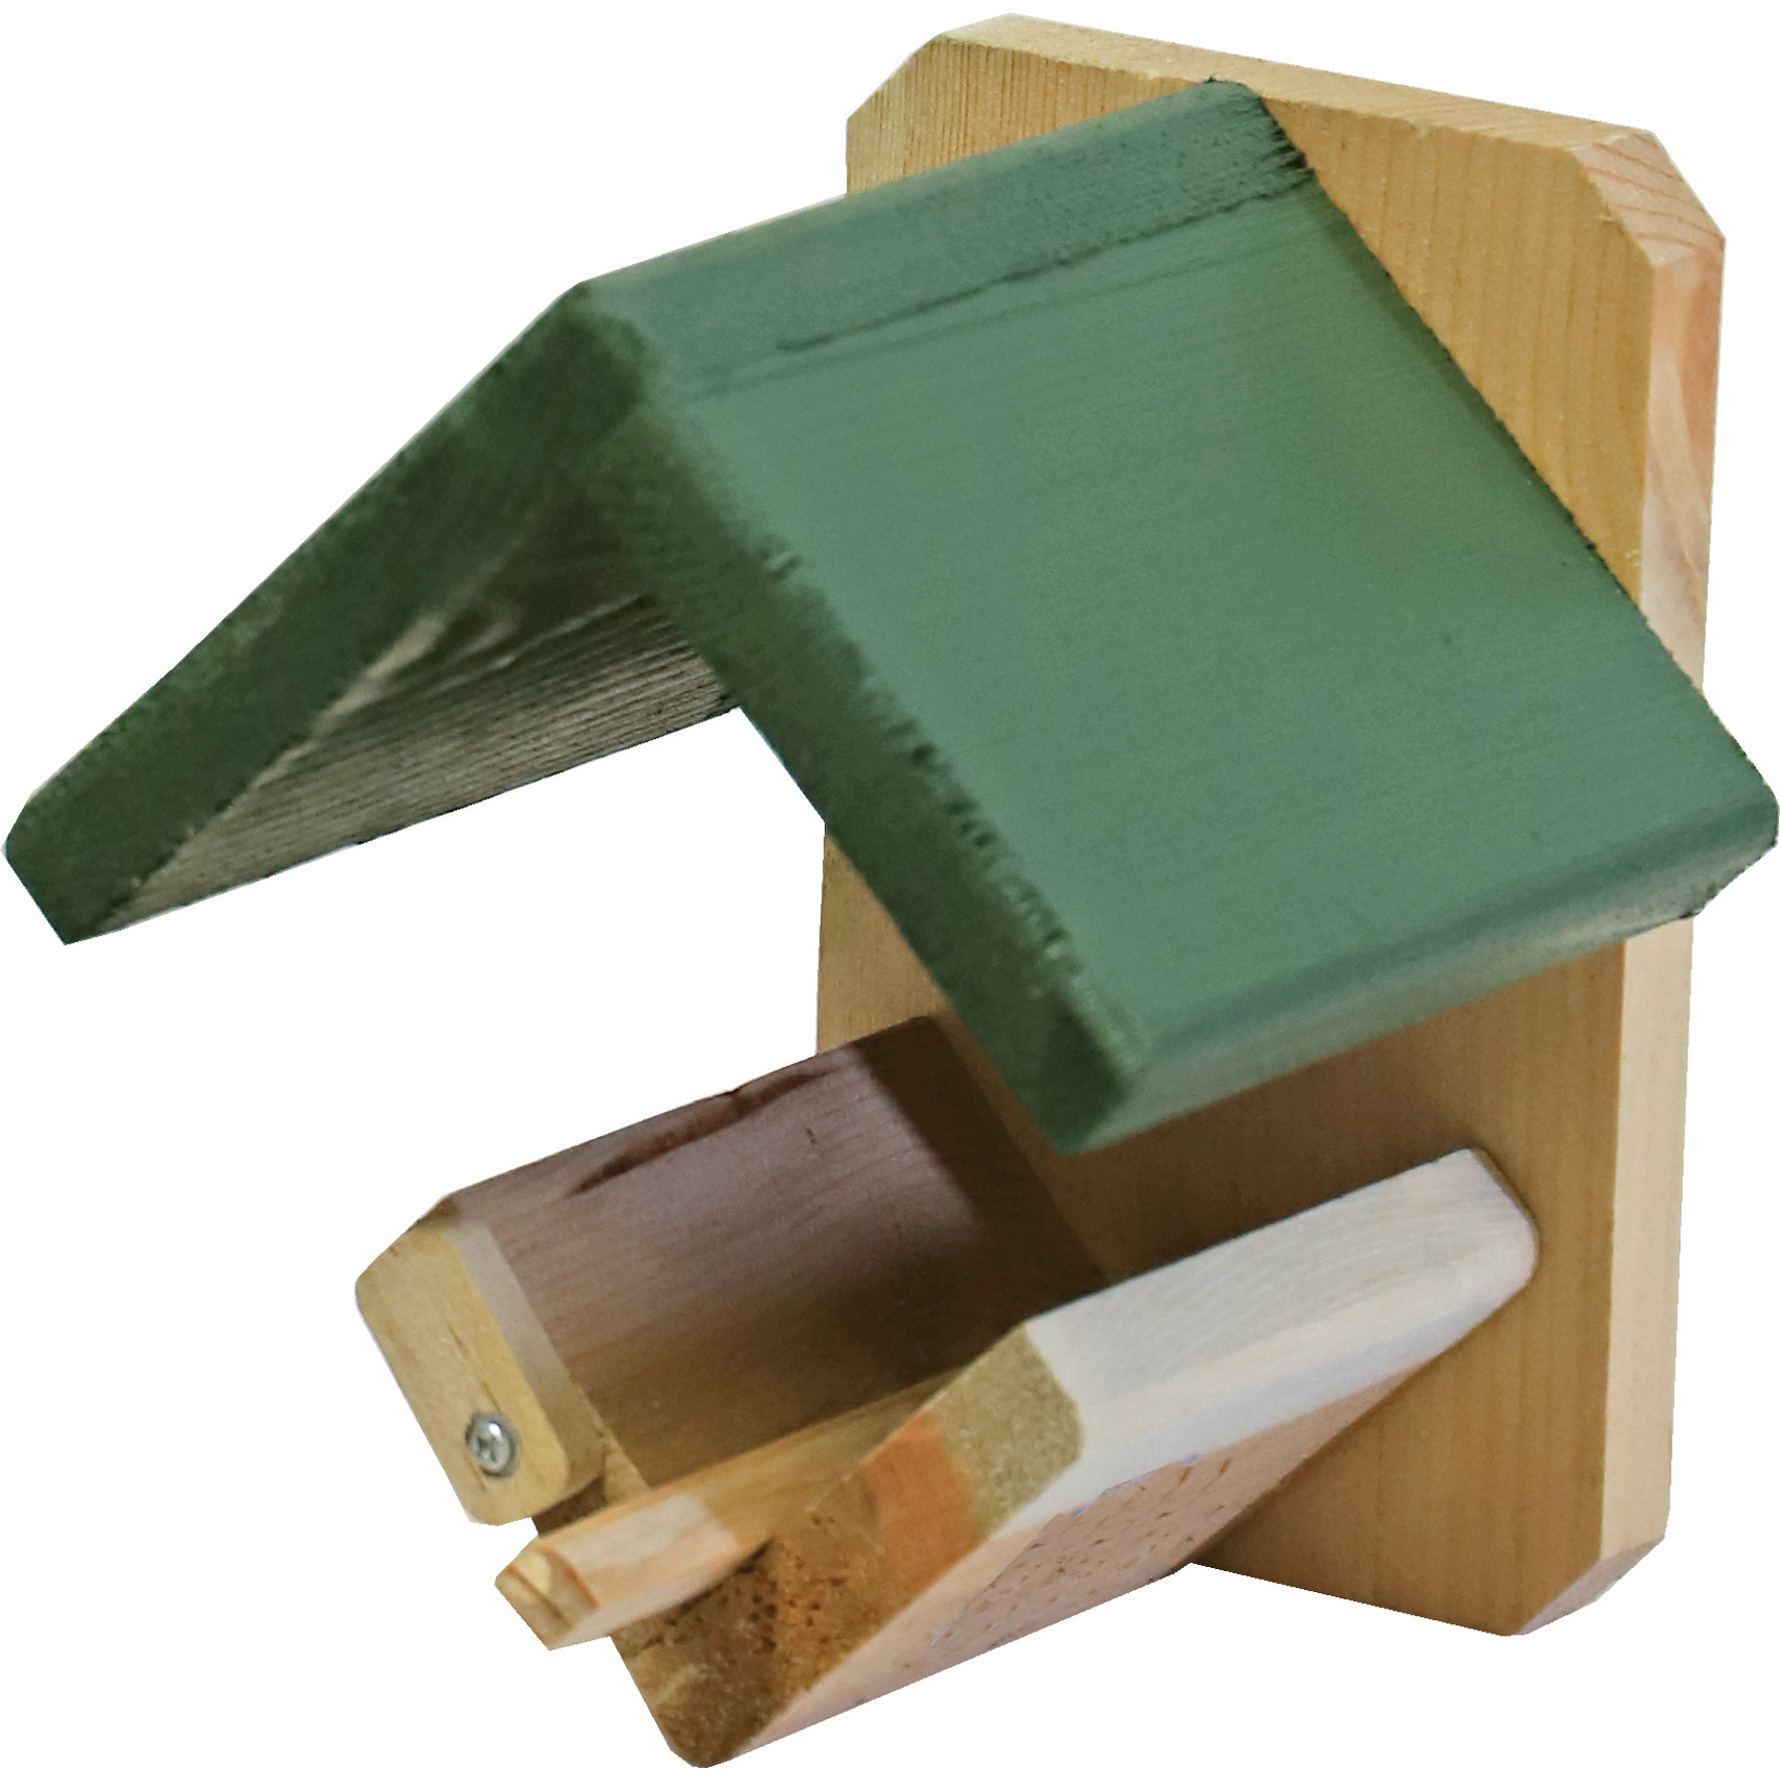 Vogelhuisje-voederhuisje-pindakaashuisje hout met groen dakje 16 cm